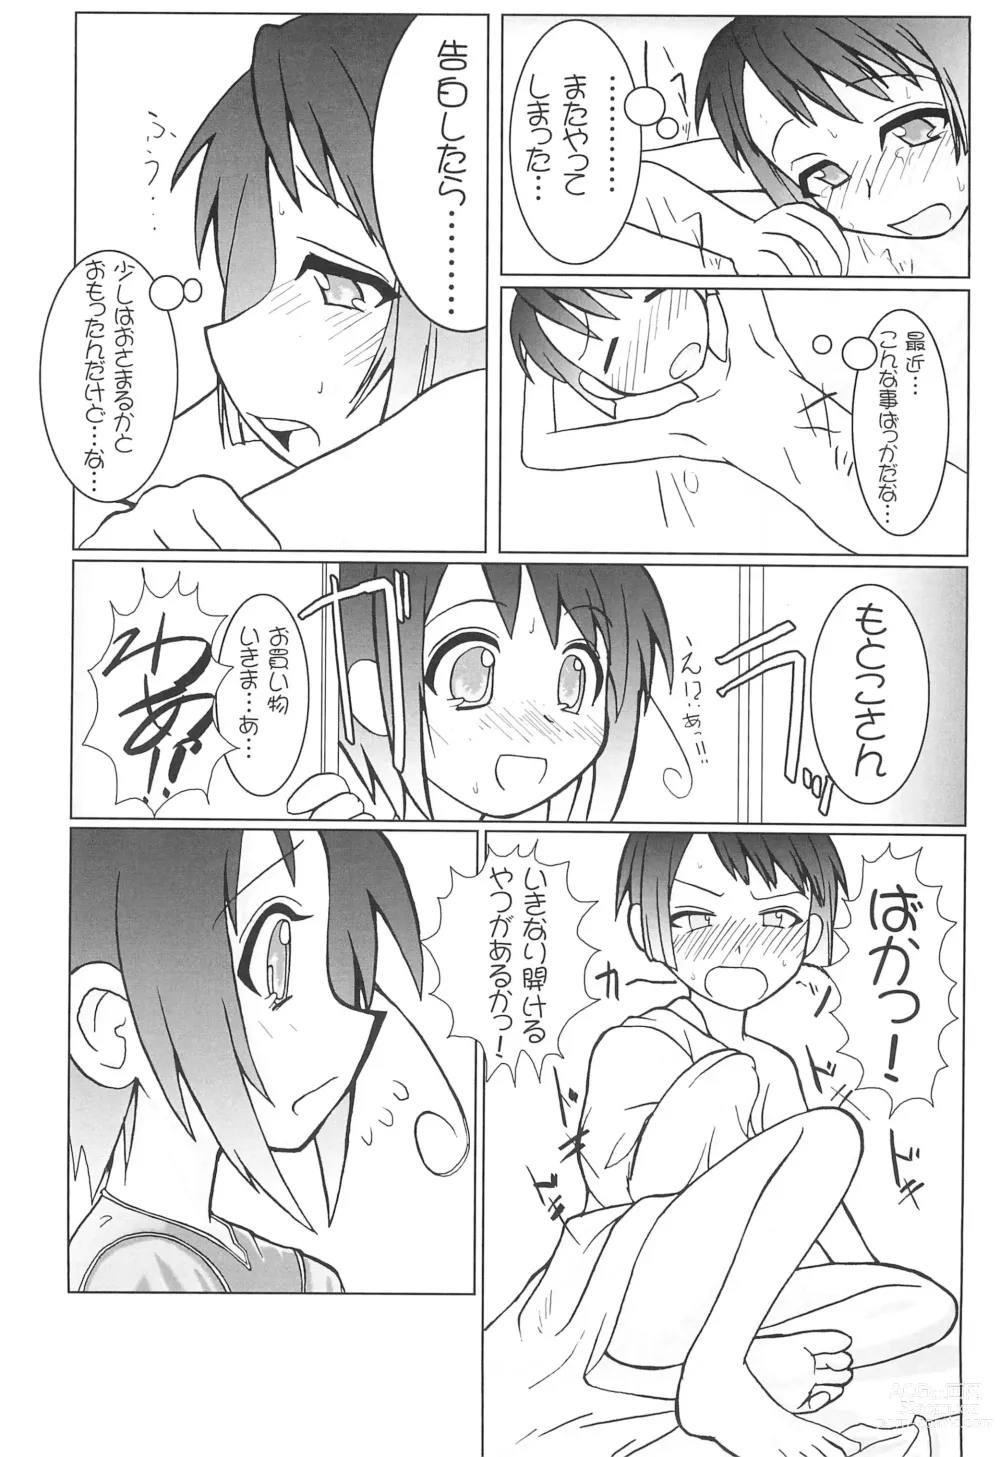 Page 7 of doujinshi Petachin 03